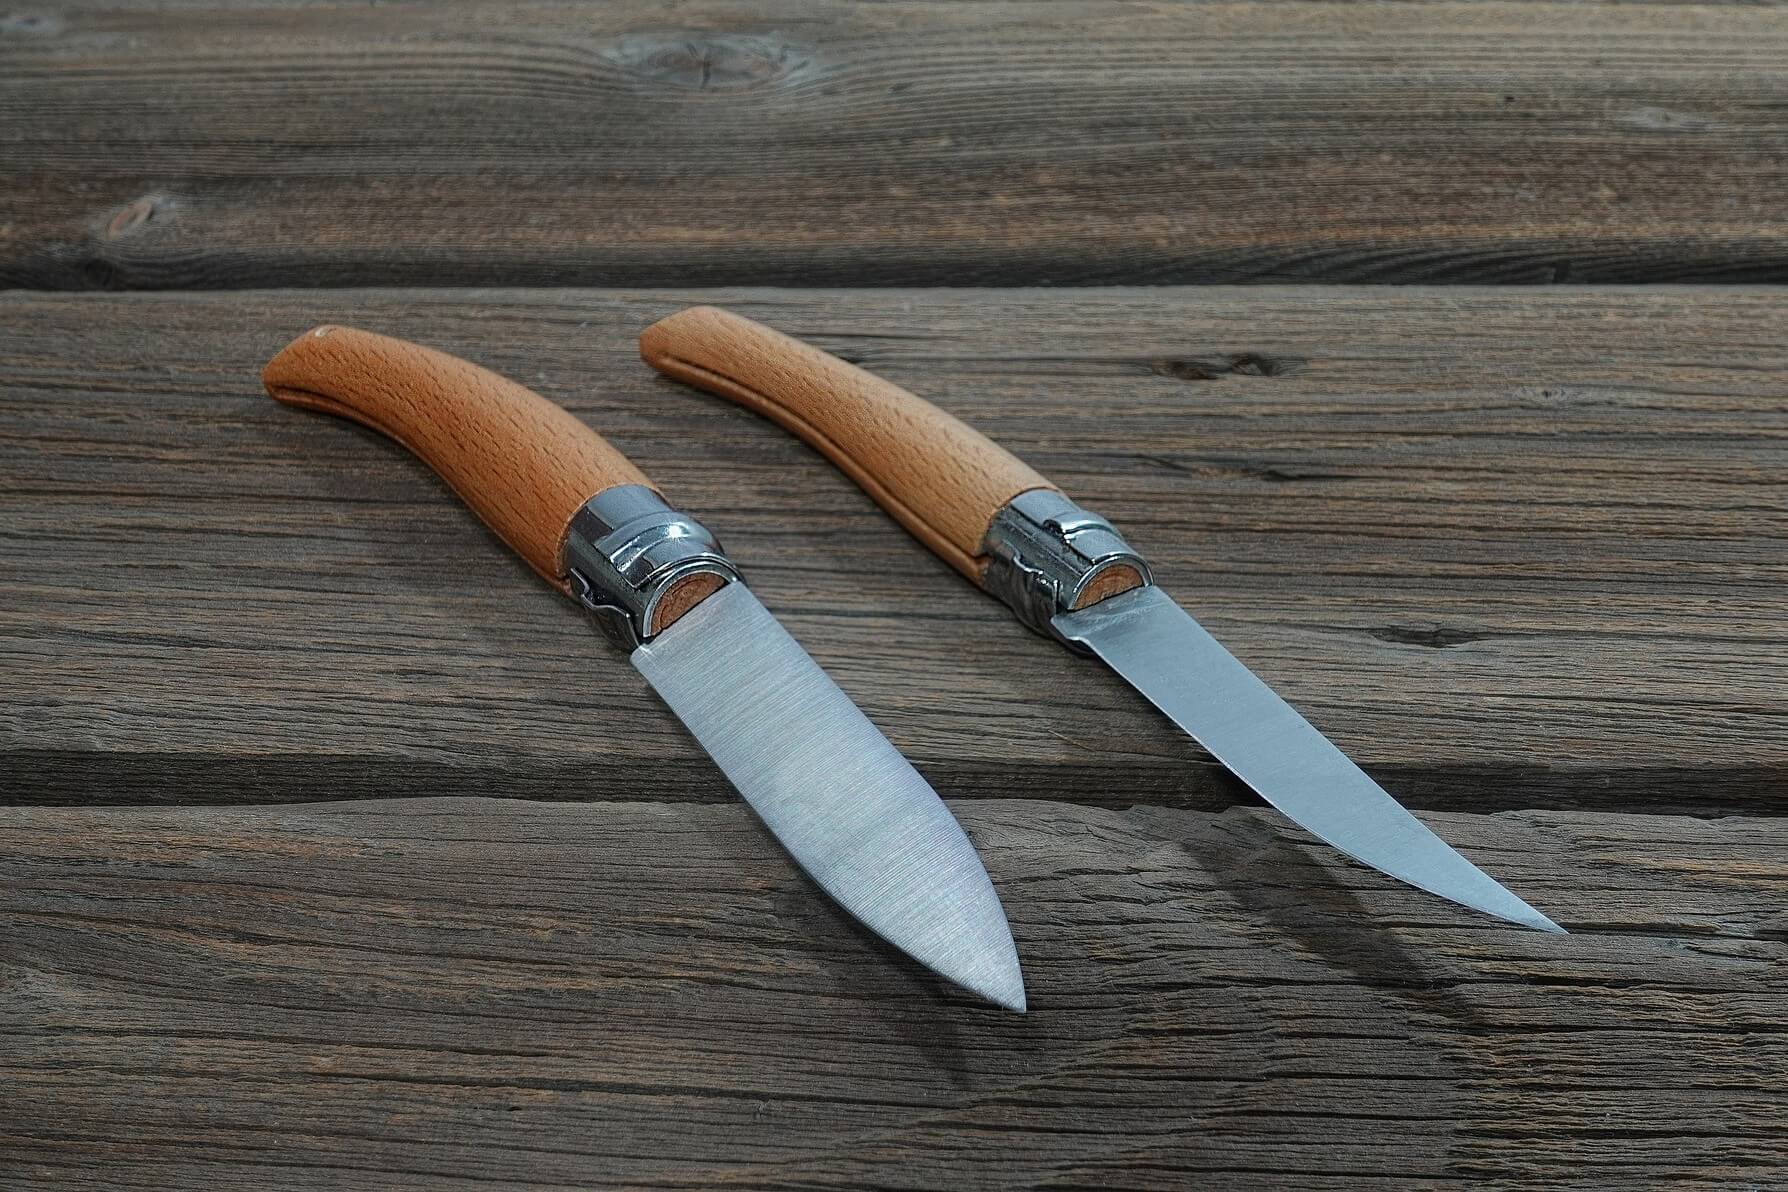 hunting knives